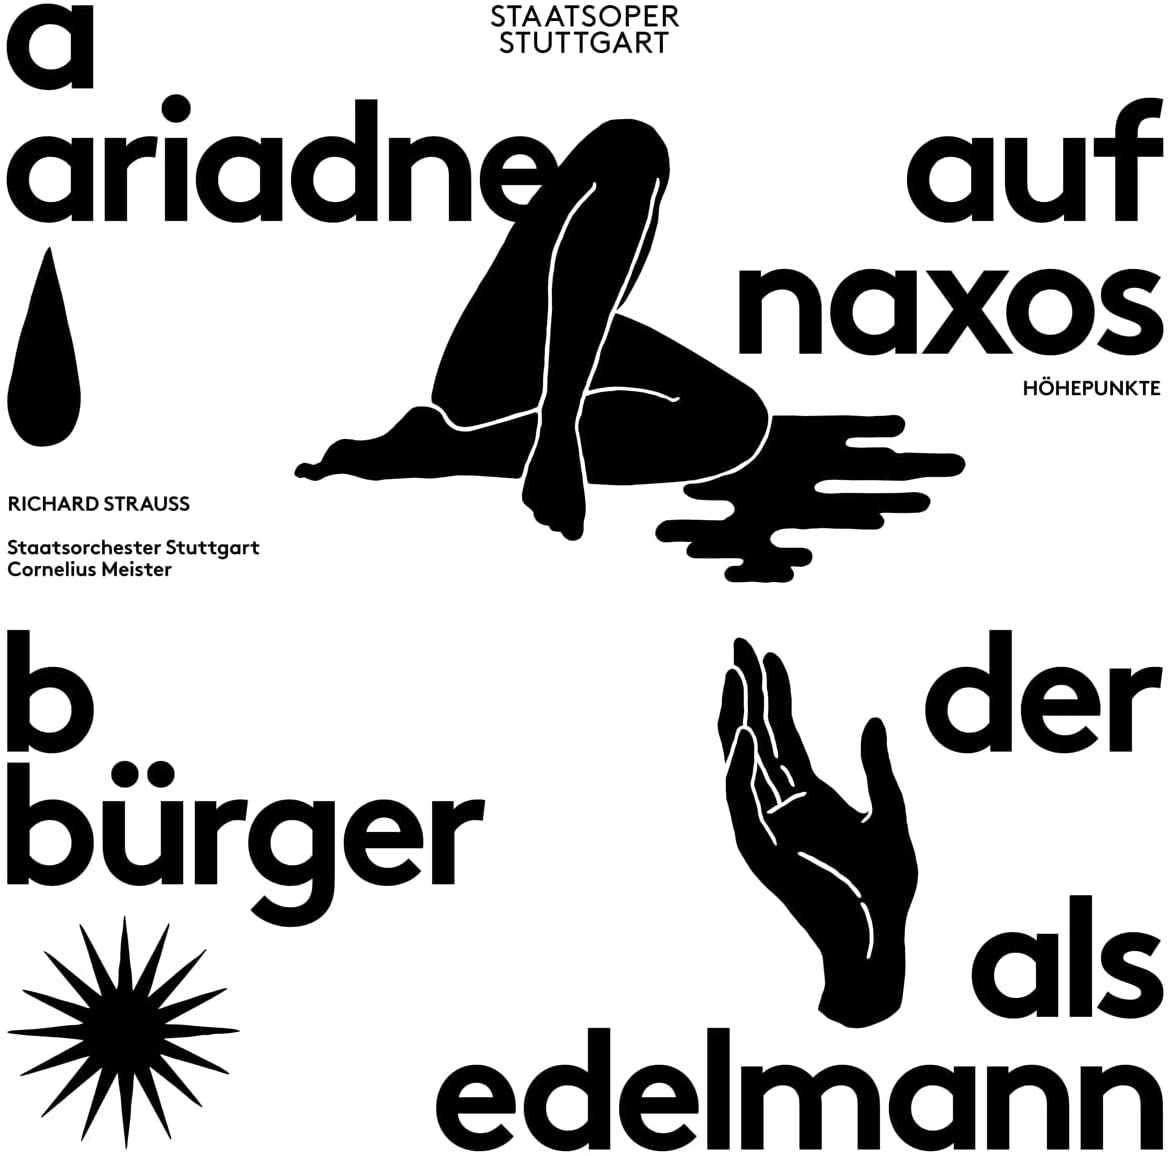 Vinile Richard Strauss - Ariadne Auf Naxos / Der Burger Als Edelmann (2 Lp) NUOVO SIGILLATO, EDIZIONE DEL 11/01/2022 SUBITO DISPONIBILE